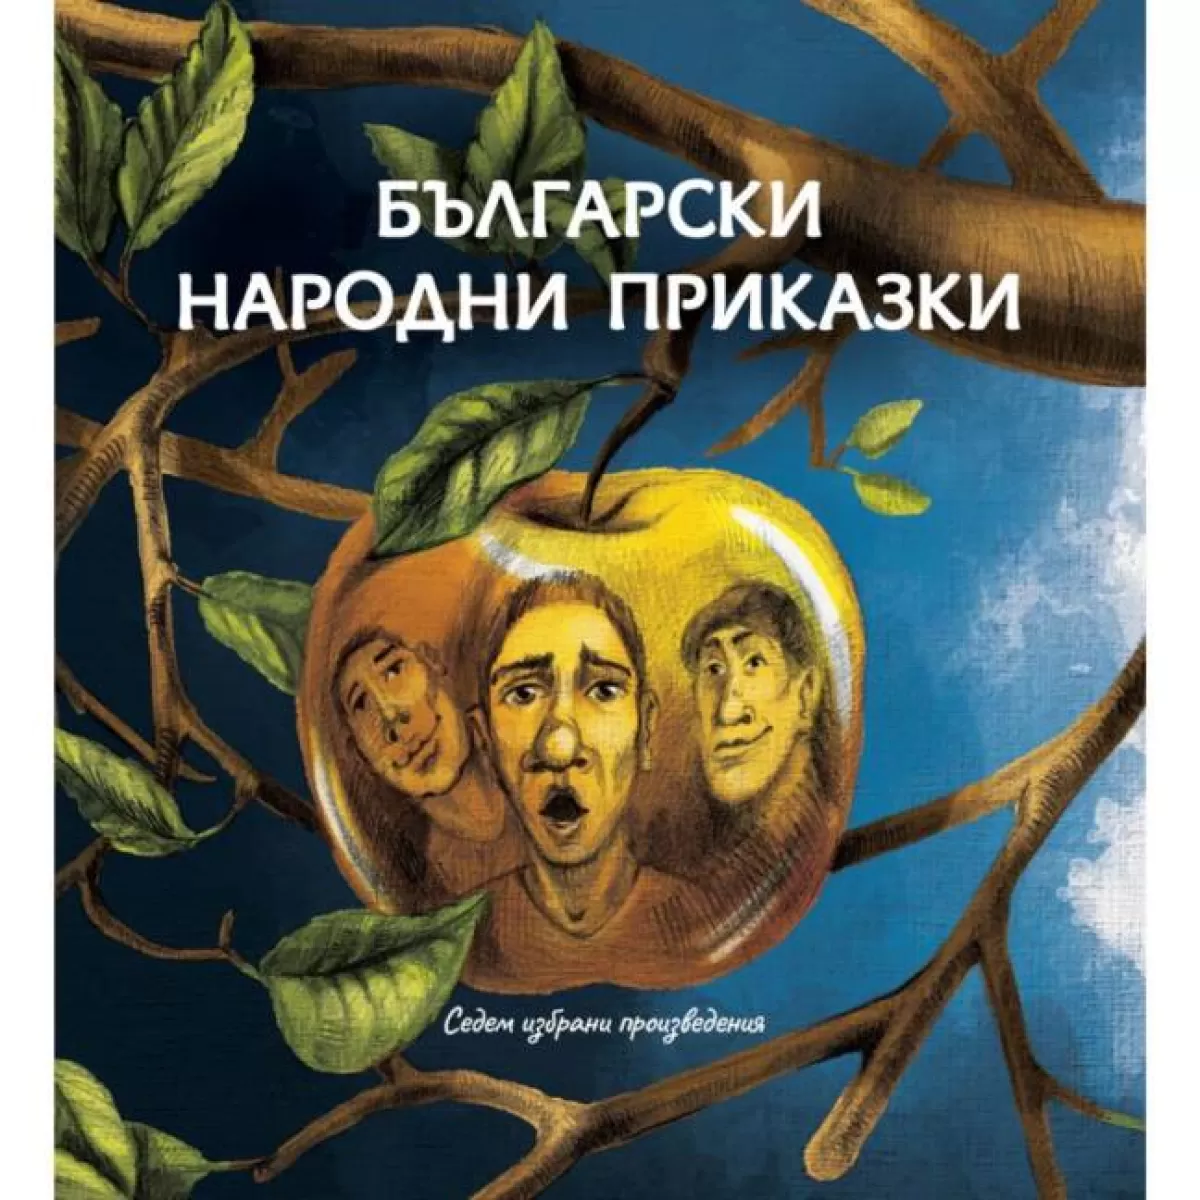 Български народни приказки – седем избрани произведения